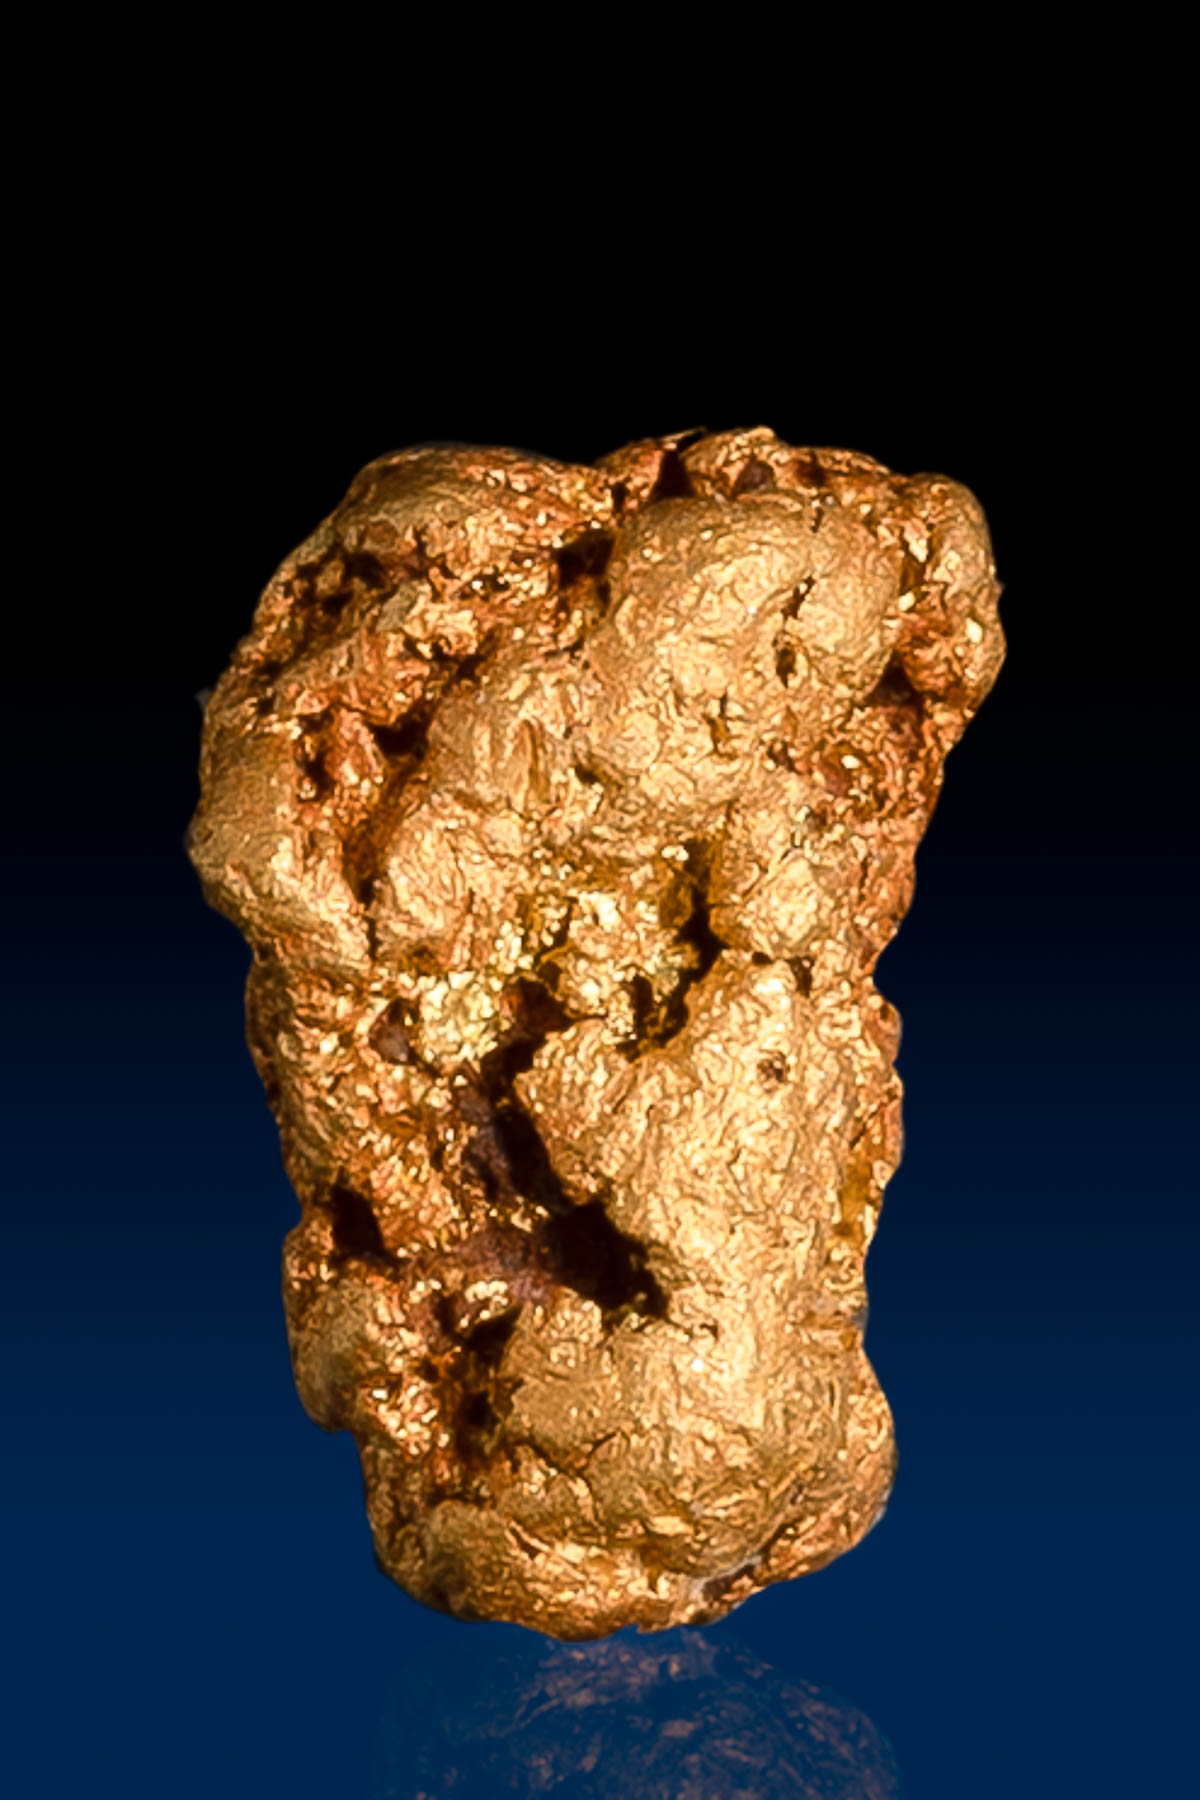 Oblong Arizona Natural Gold Nugget - 1.80 grams